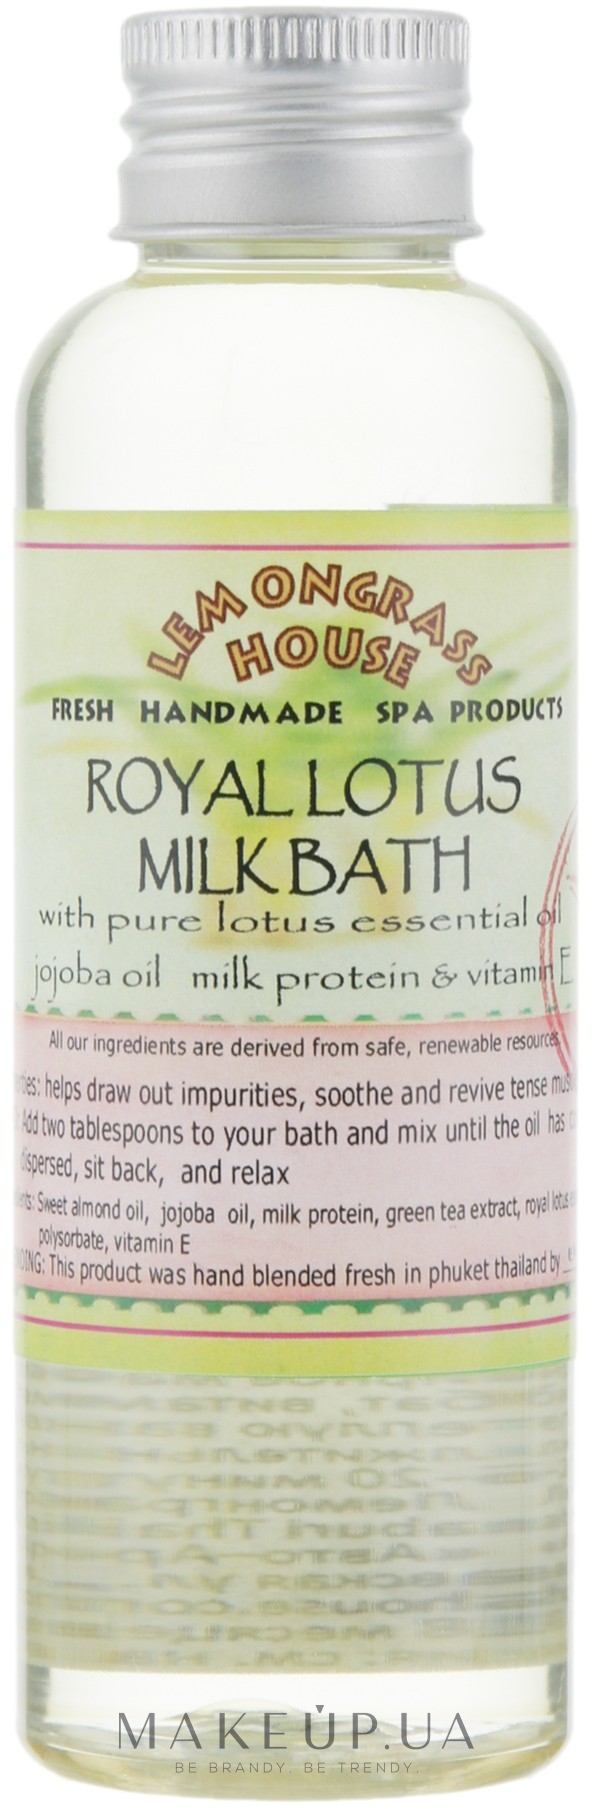 Молочна ванна "Королівський лотос" - Lemongrass House Royal Lotus Milk Bath — фото 120ml